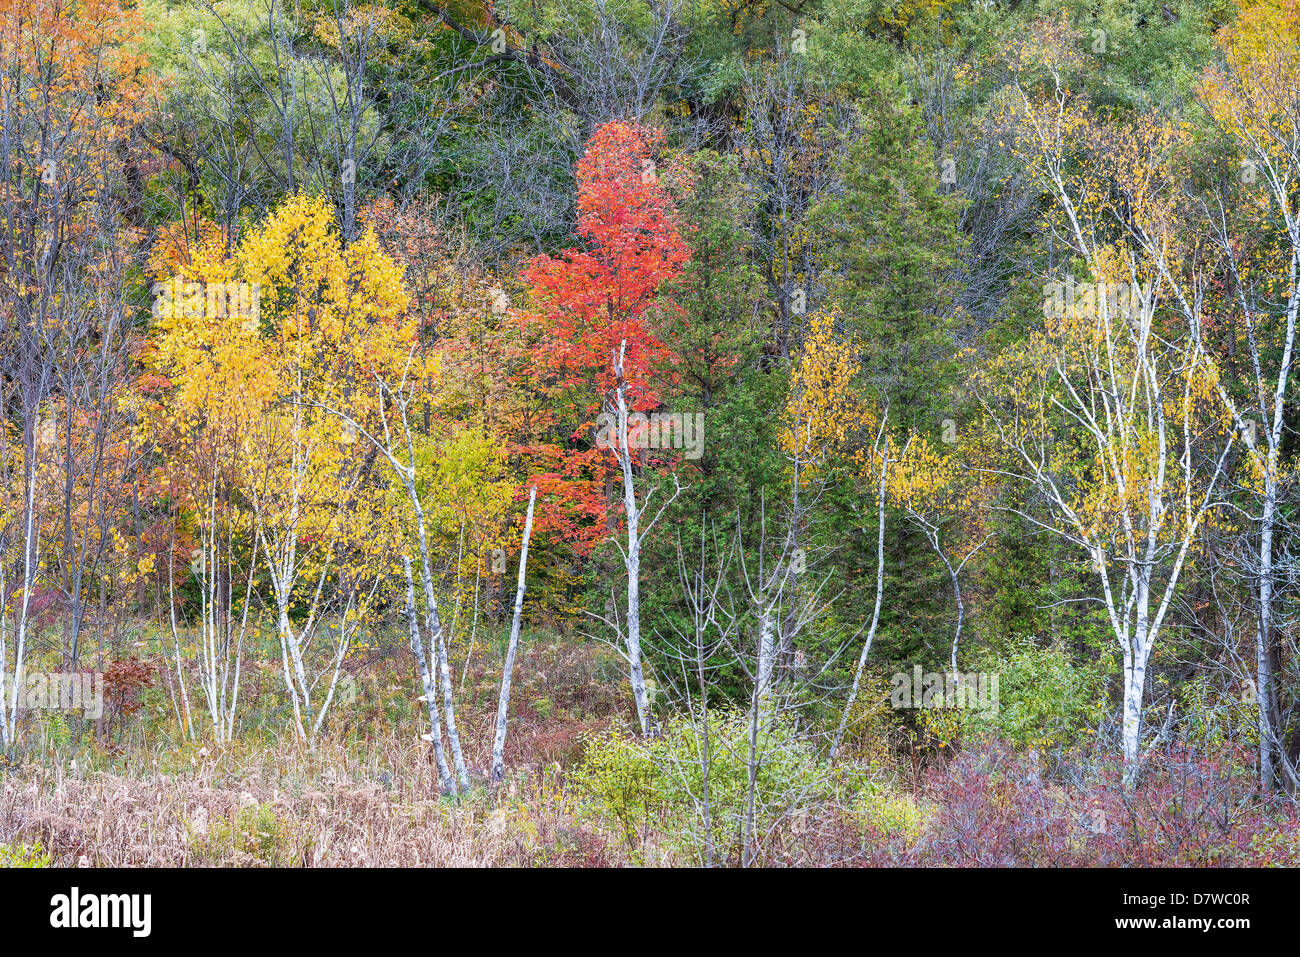 Couleurs d'automne dans les forêts anciennes dans la région de Webster falls conservation area, Ontario Canada Banque D'Images